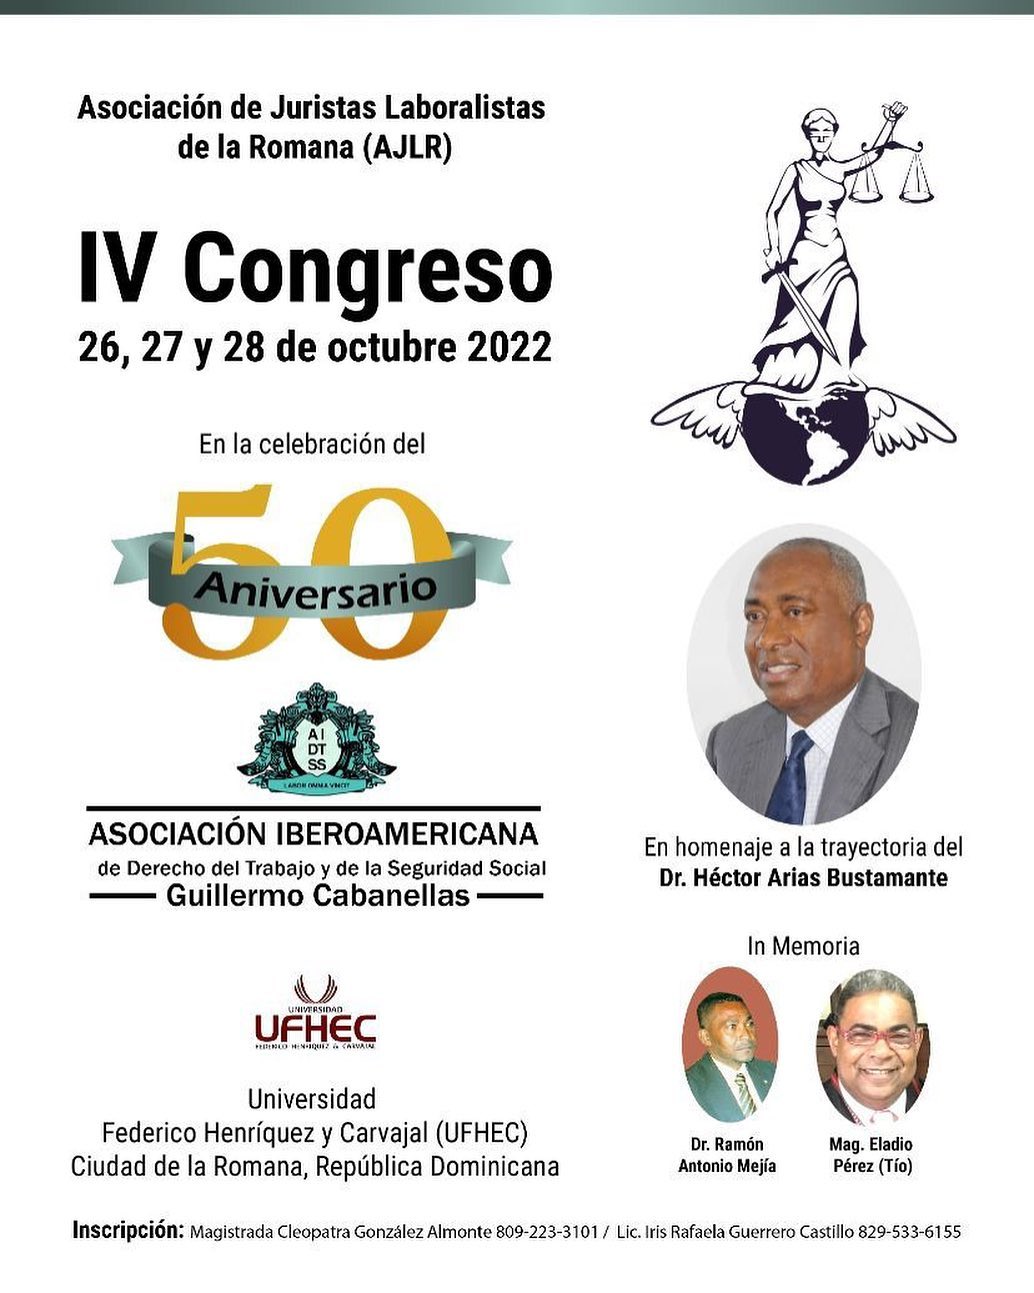 La Asociación de Juristas Laboralistas de la Romana (AJLR) invitan al IV Congreso.